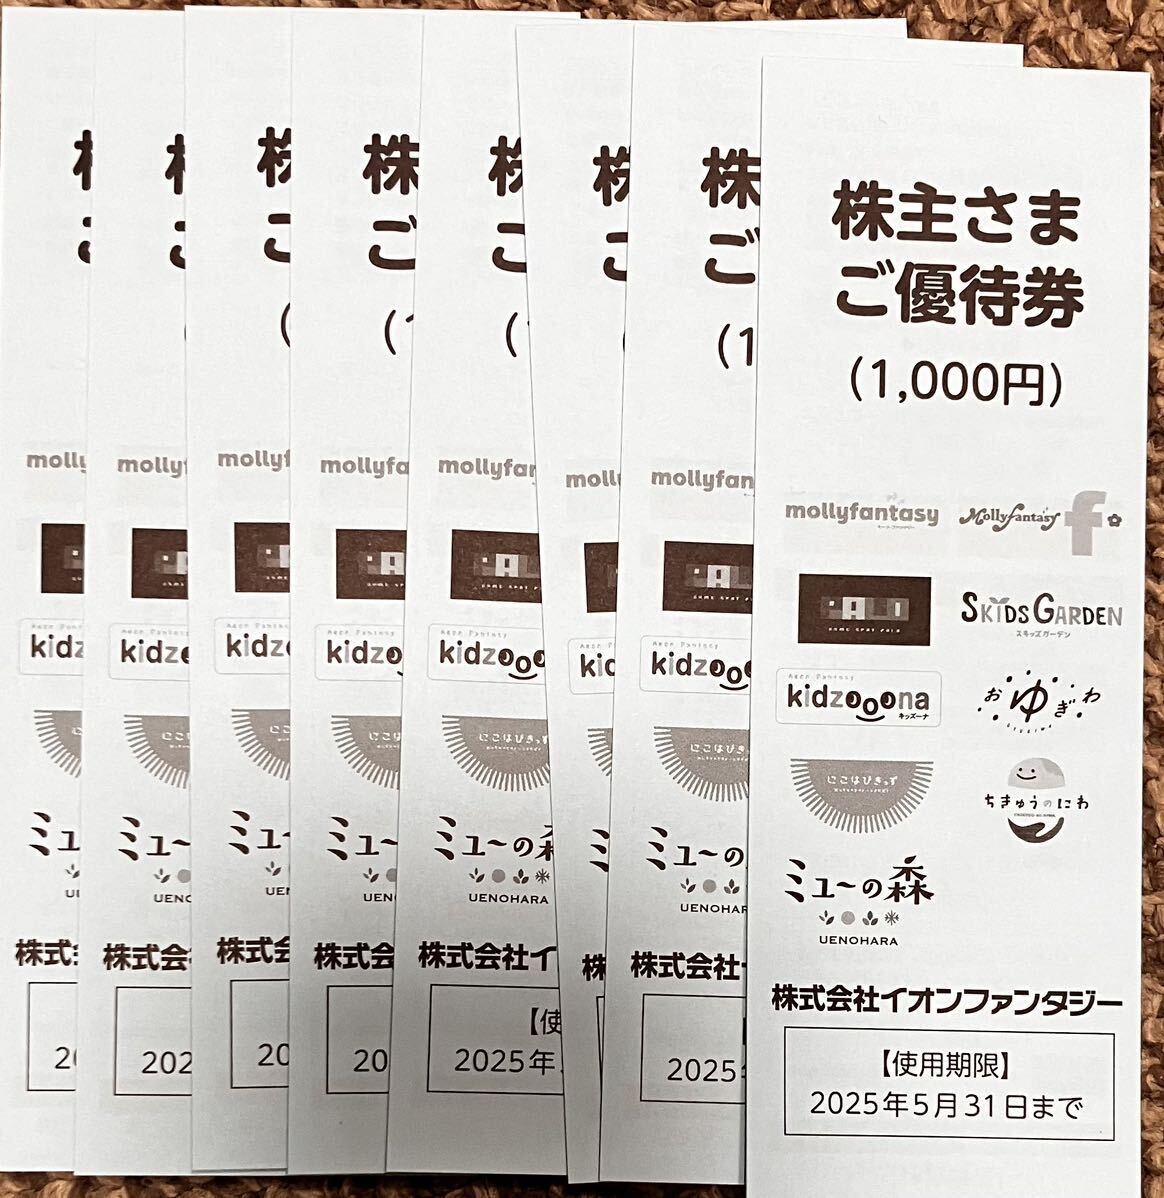 イオンファンタジー 株主優待 8,000円分_画像1